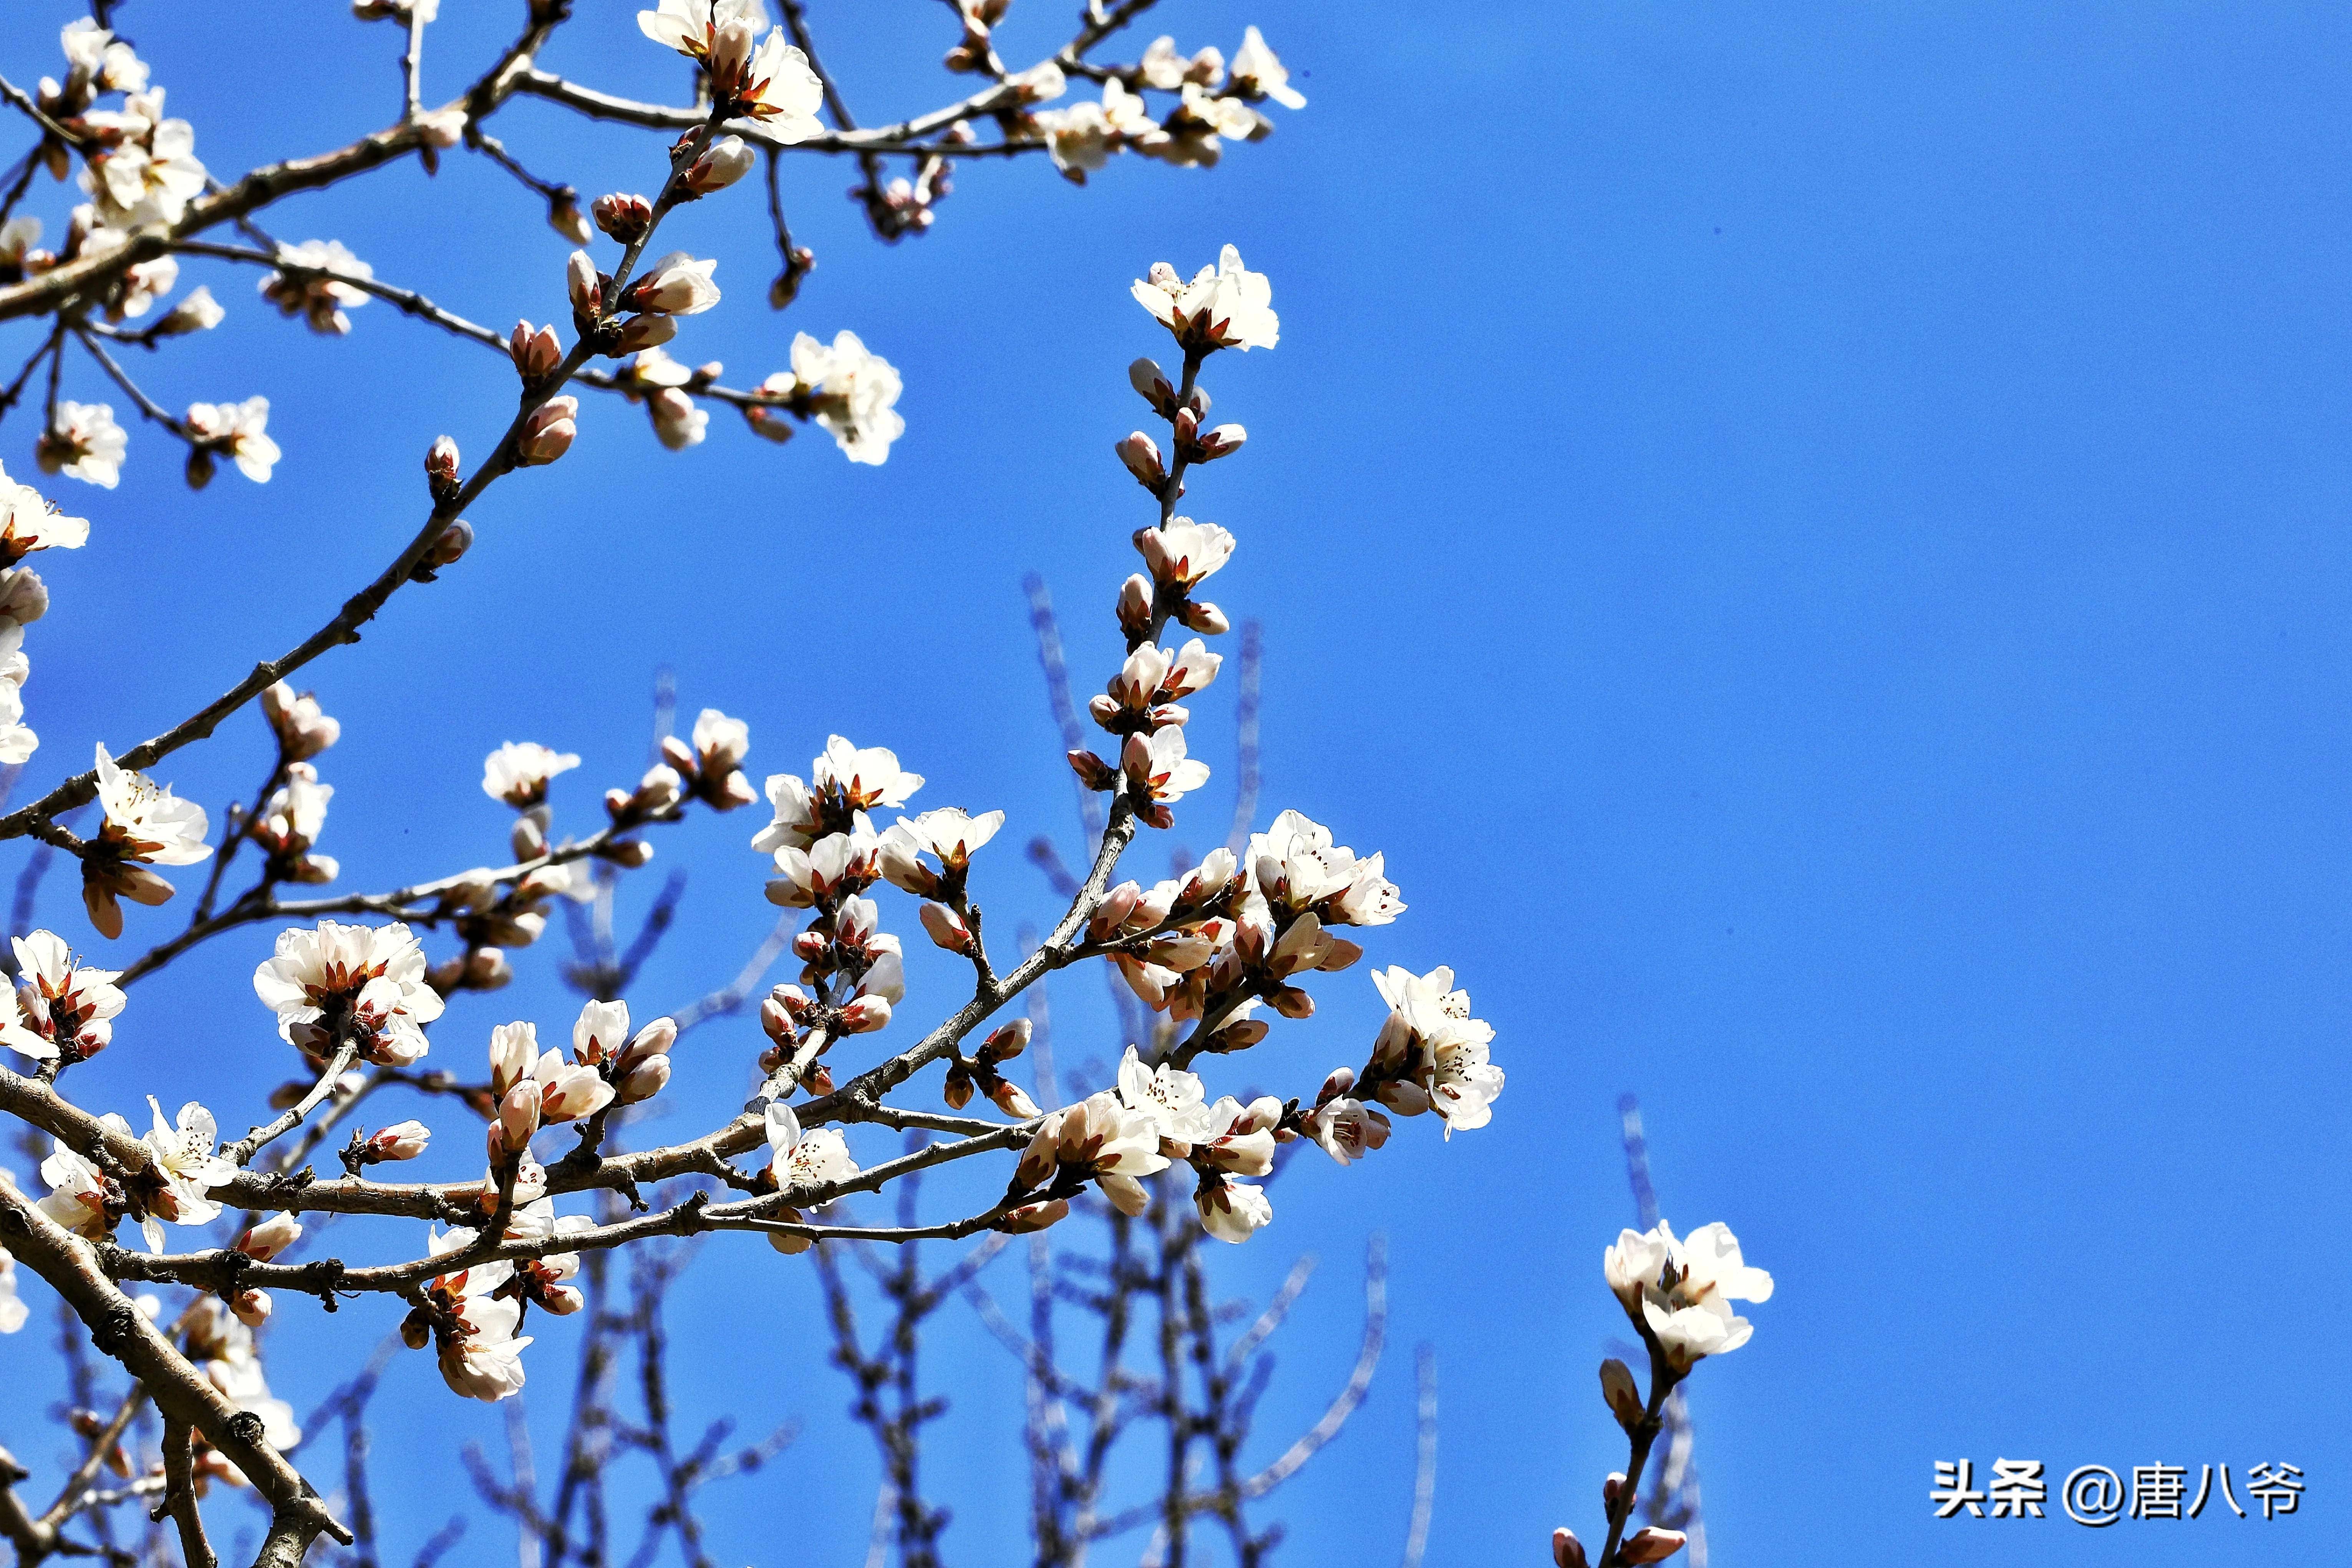 粉白花开春意浓,枝头春色满园香,一幅春天花园的美丽景象